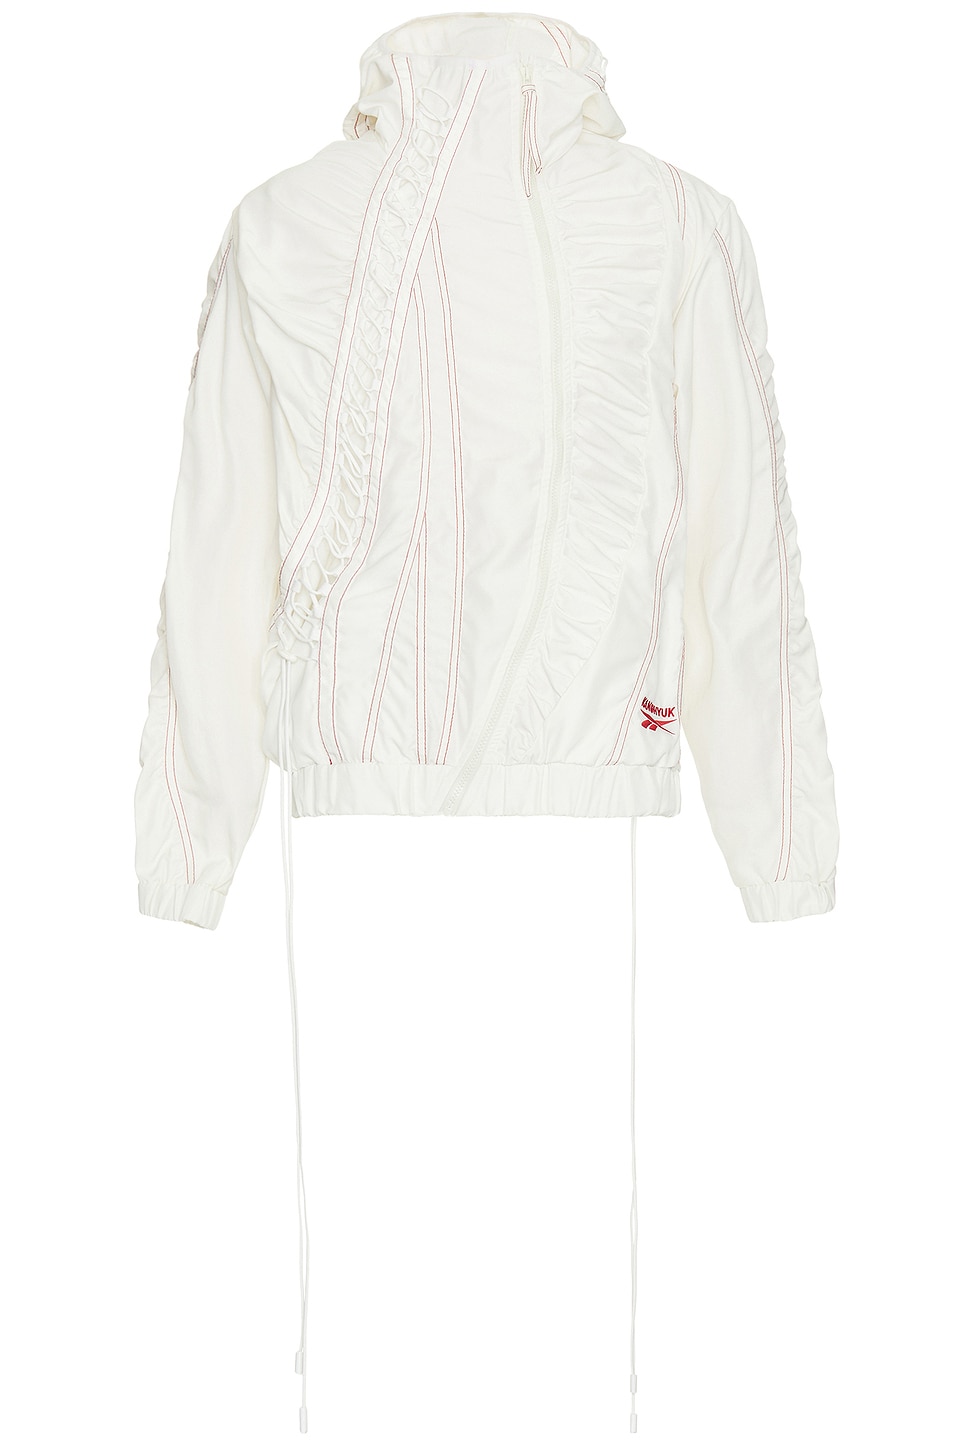 Image 1 of Reebok x Kanghyuk Hooded Jacket in White & Red